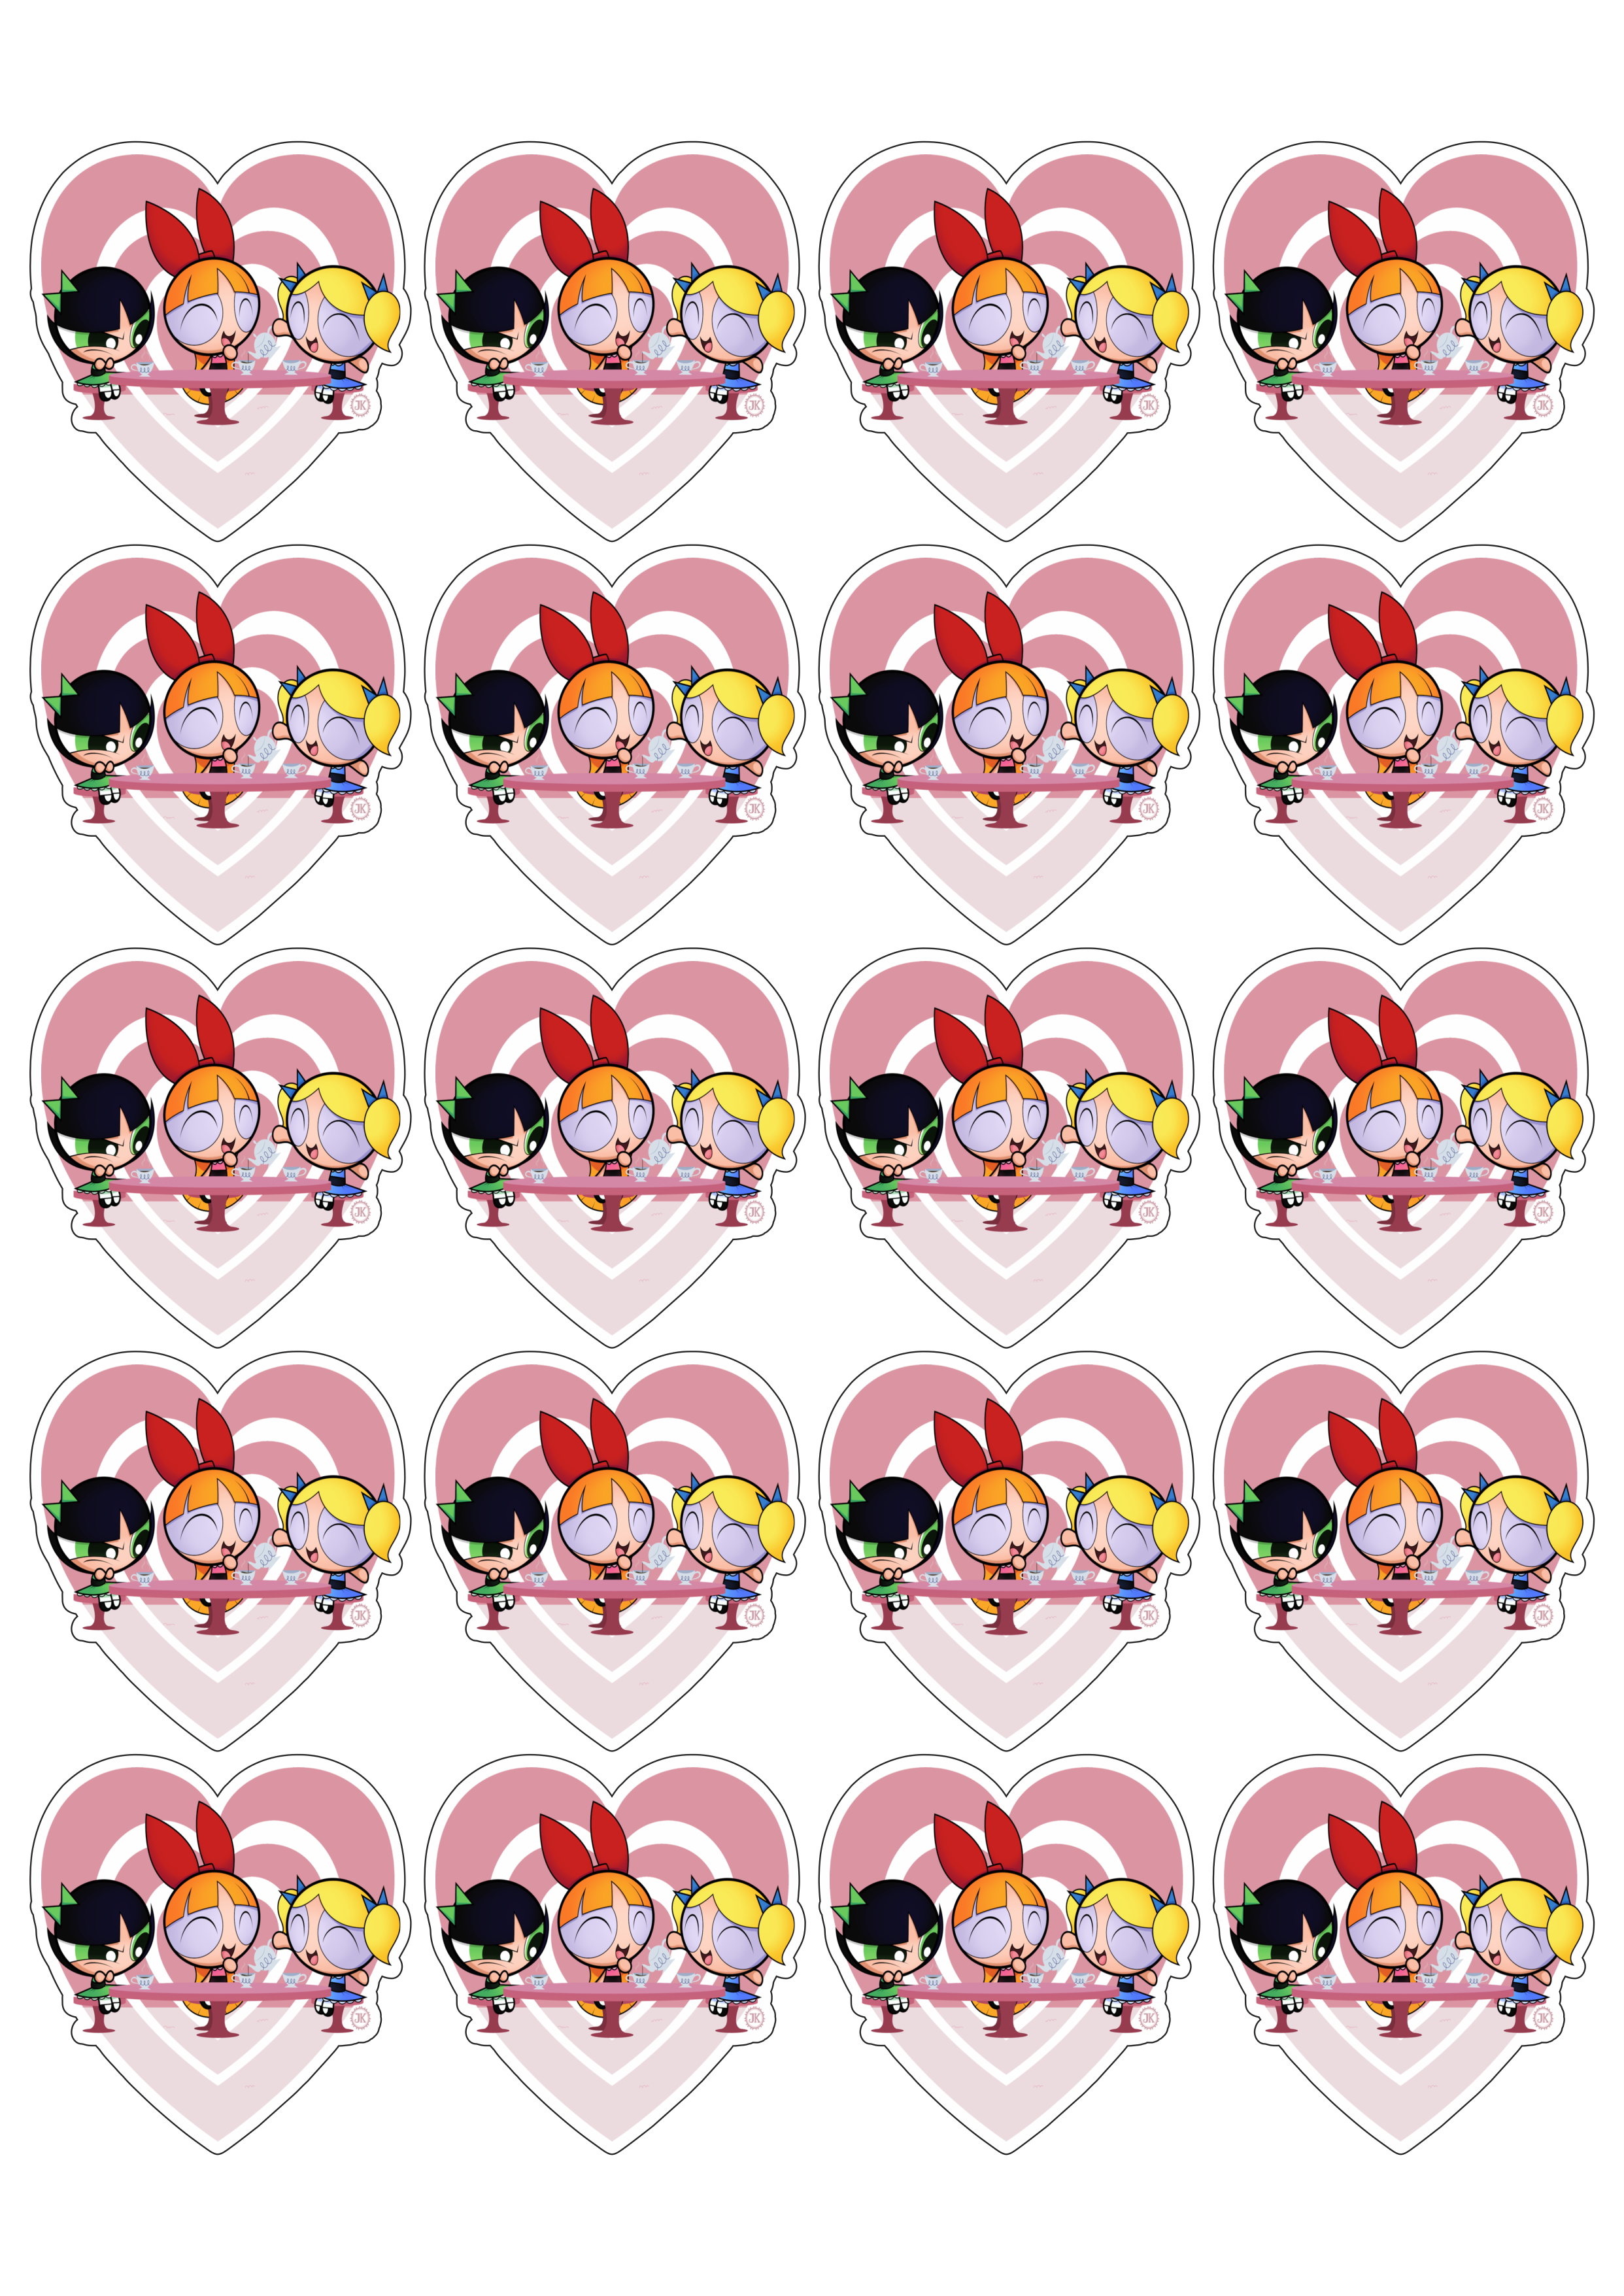 The powerpuff girls as meninas super poderosas corações stickers 20 imagens png